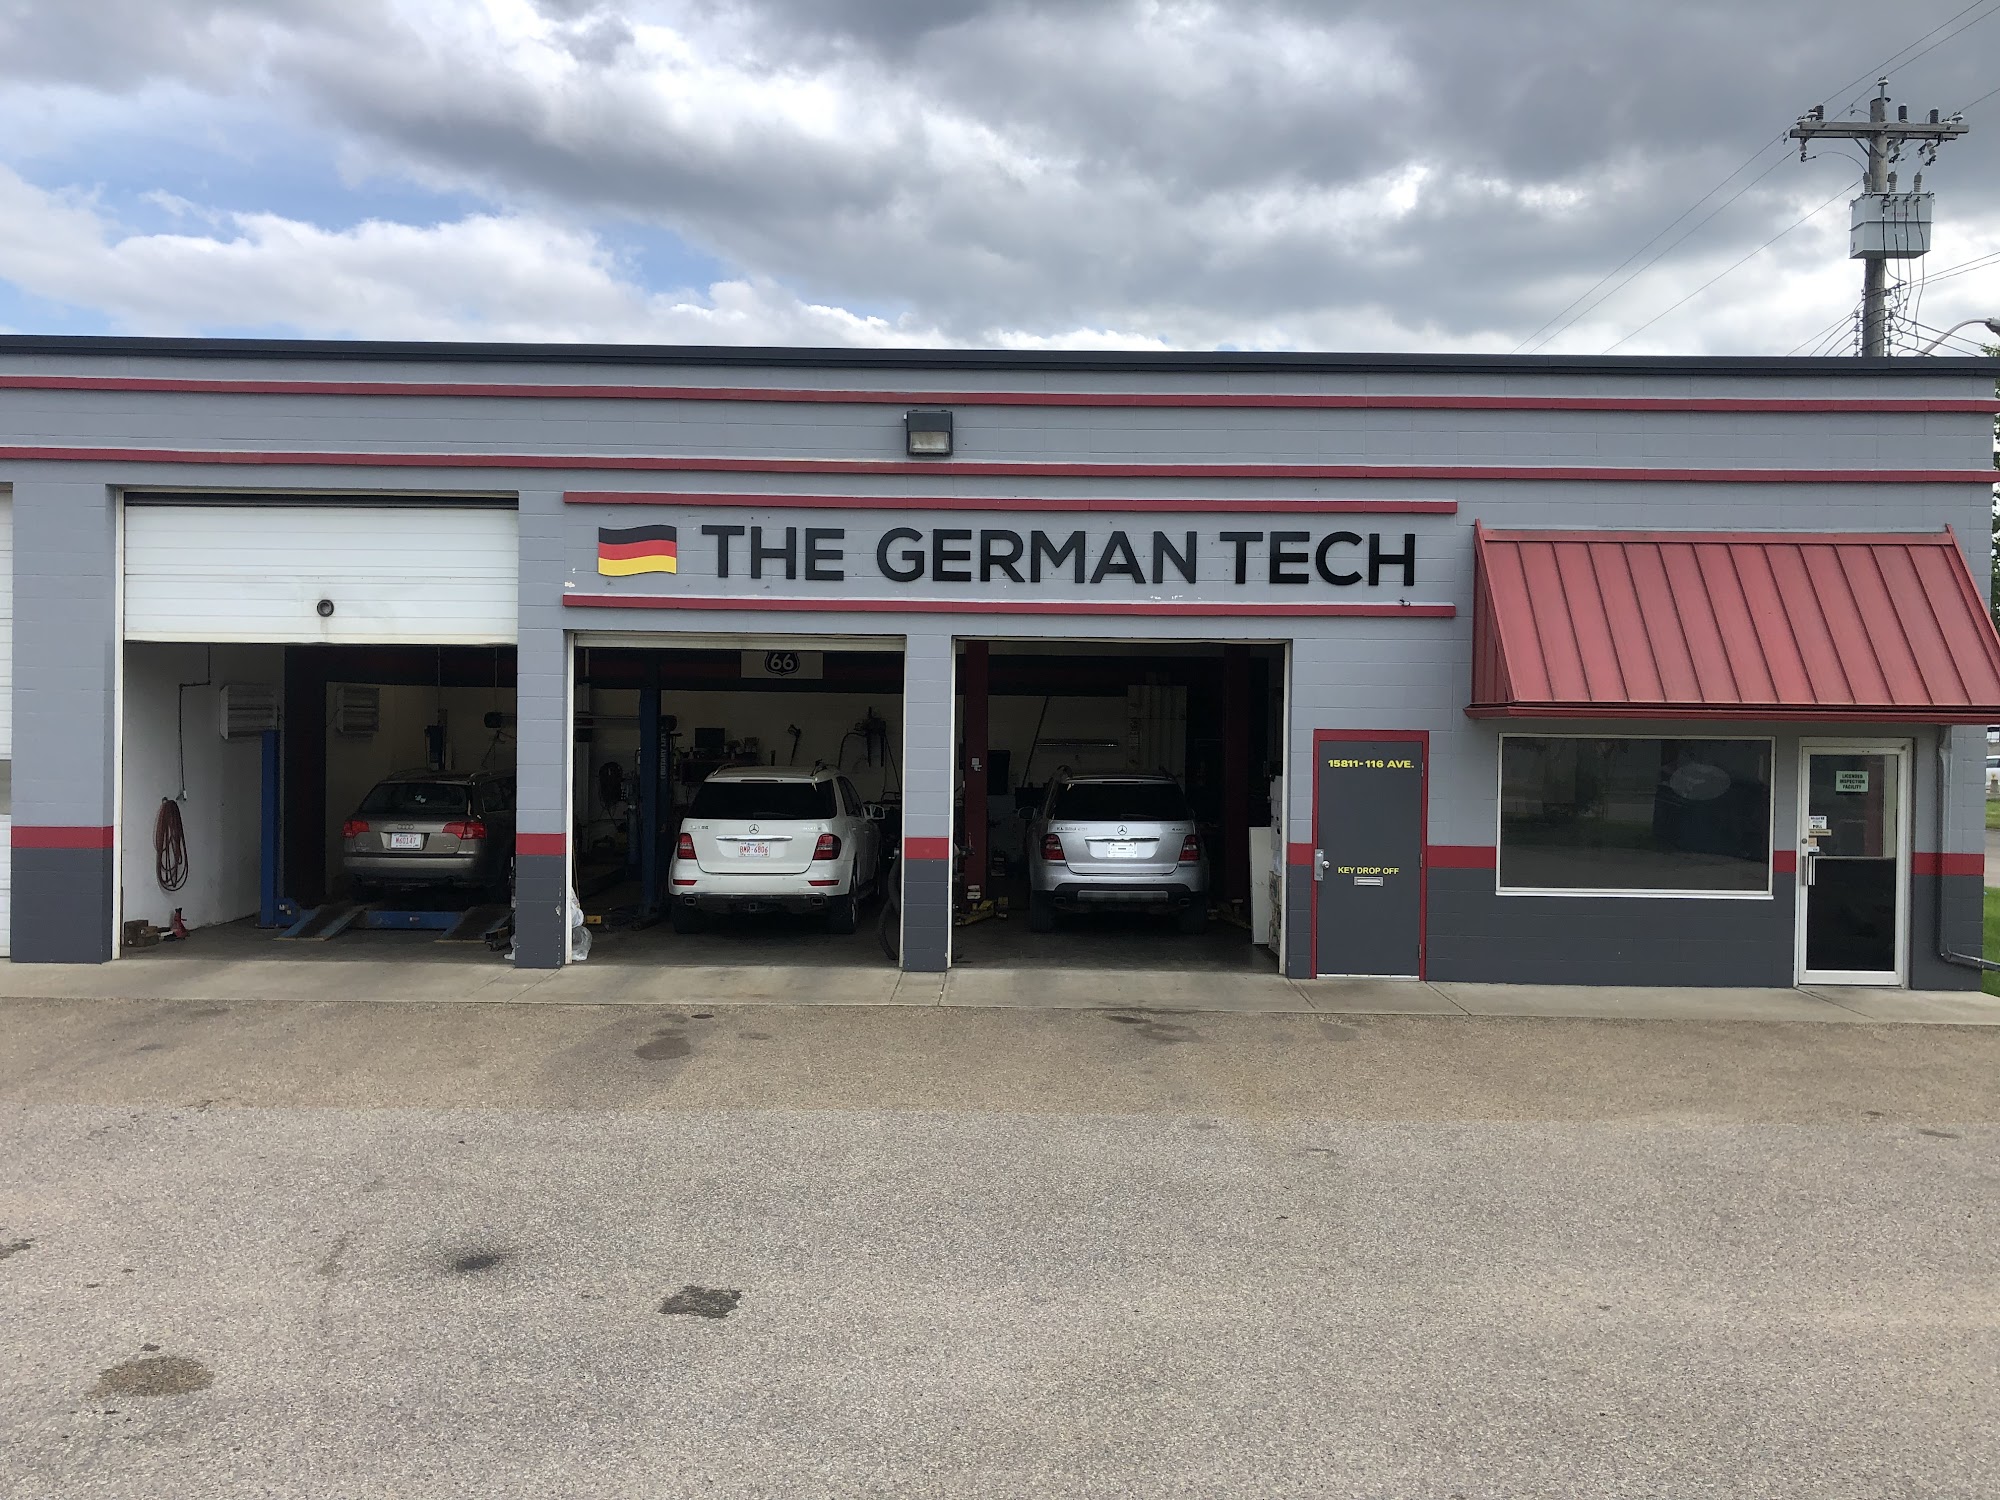 The German tech